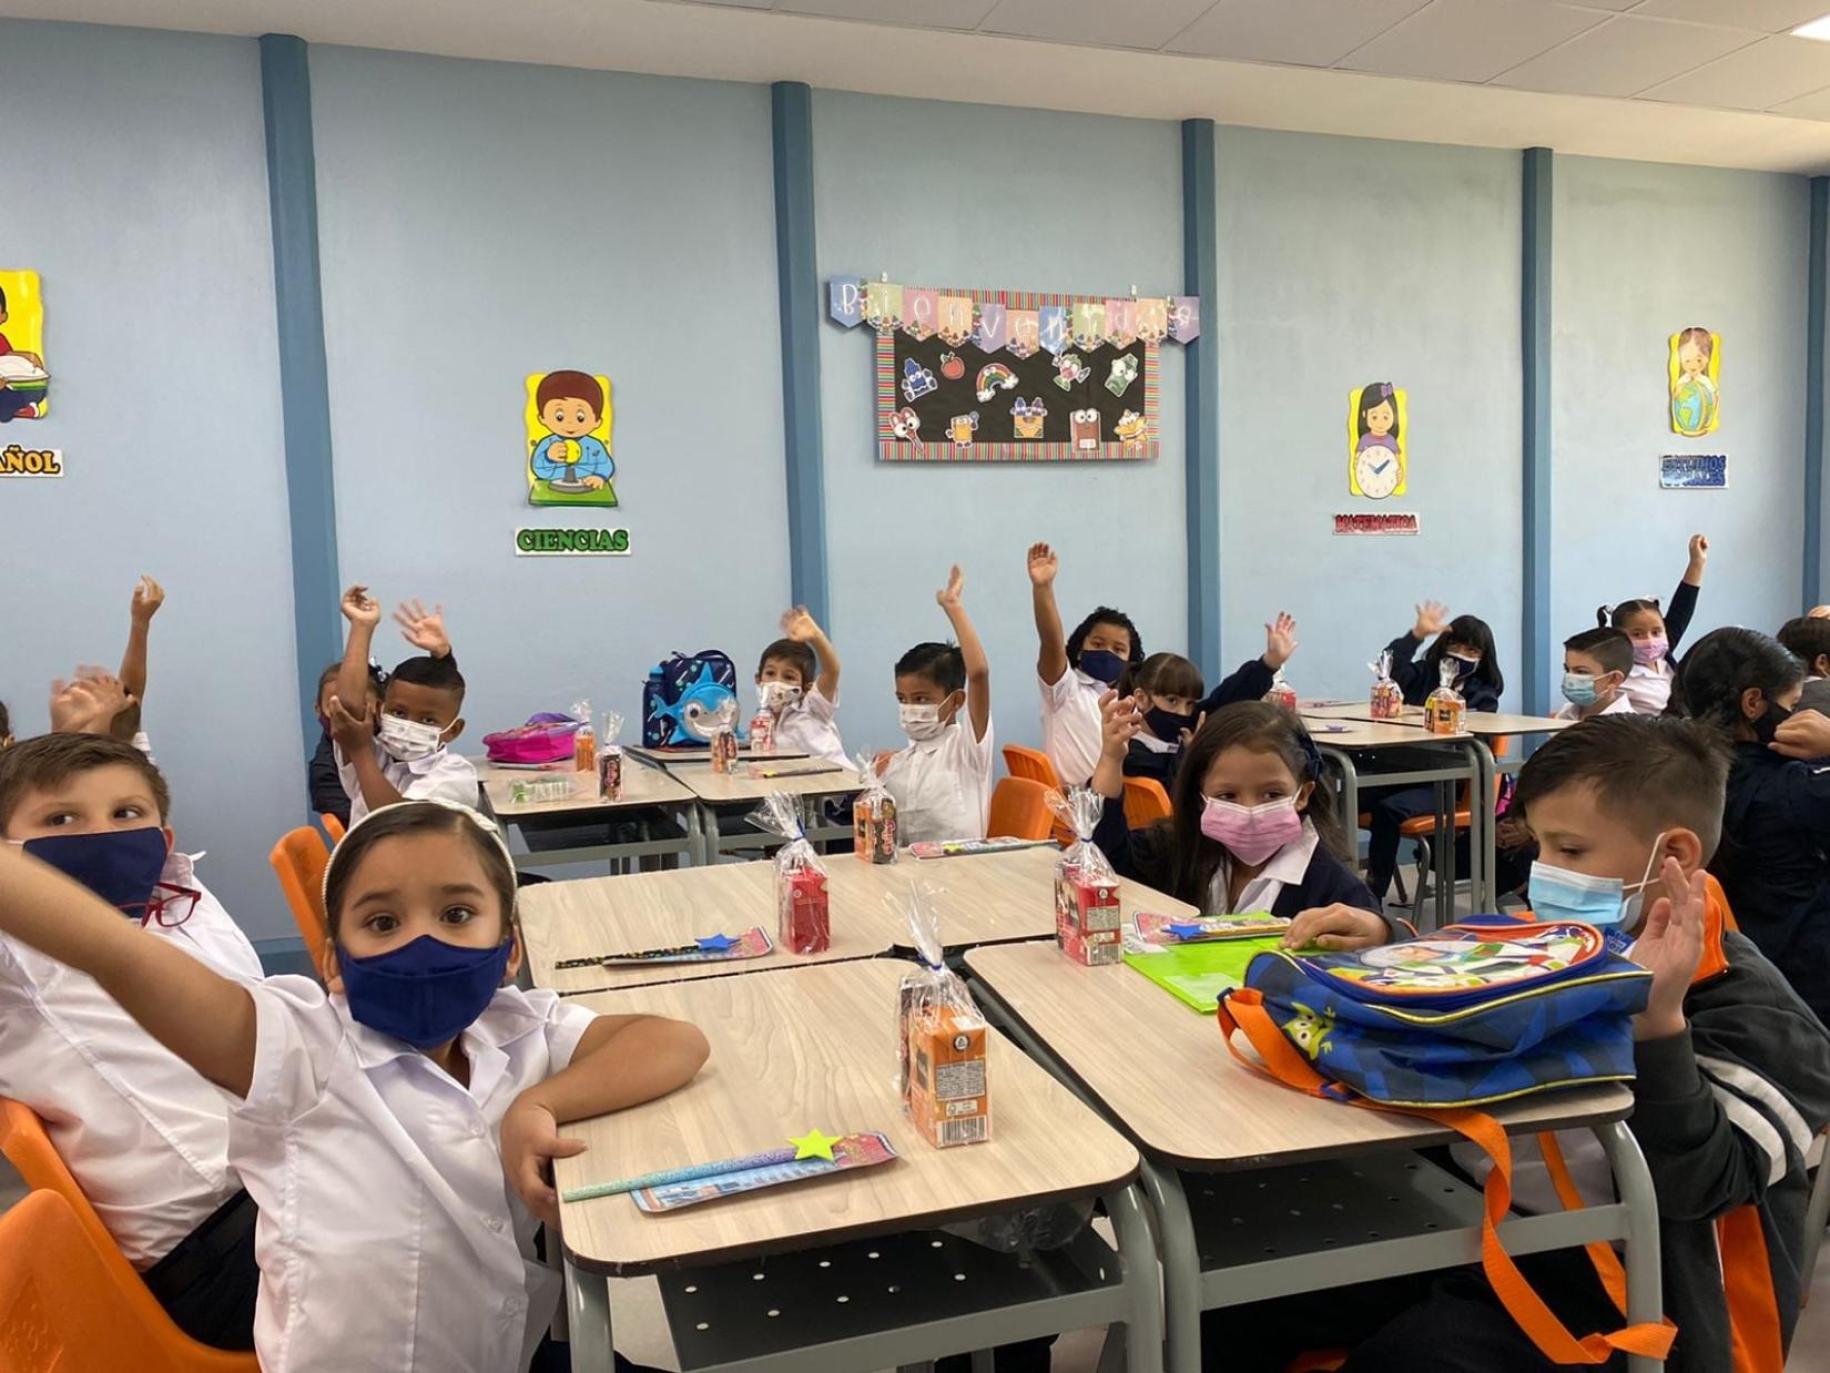  Un grupo de niños y niñas en edad escolar se sientan uno al lado del otro en su aula y levantan la mano para participar en las clases.